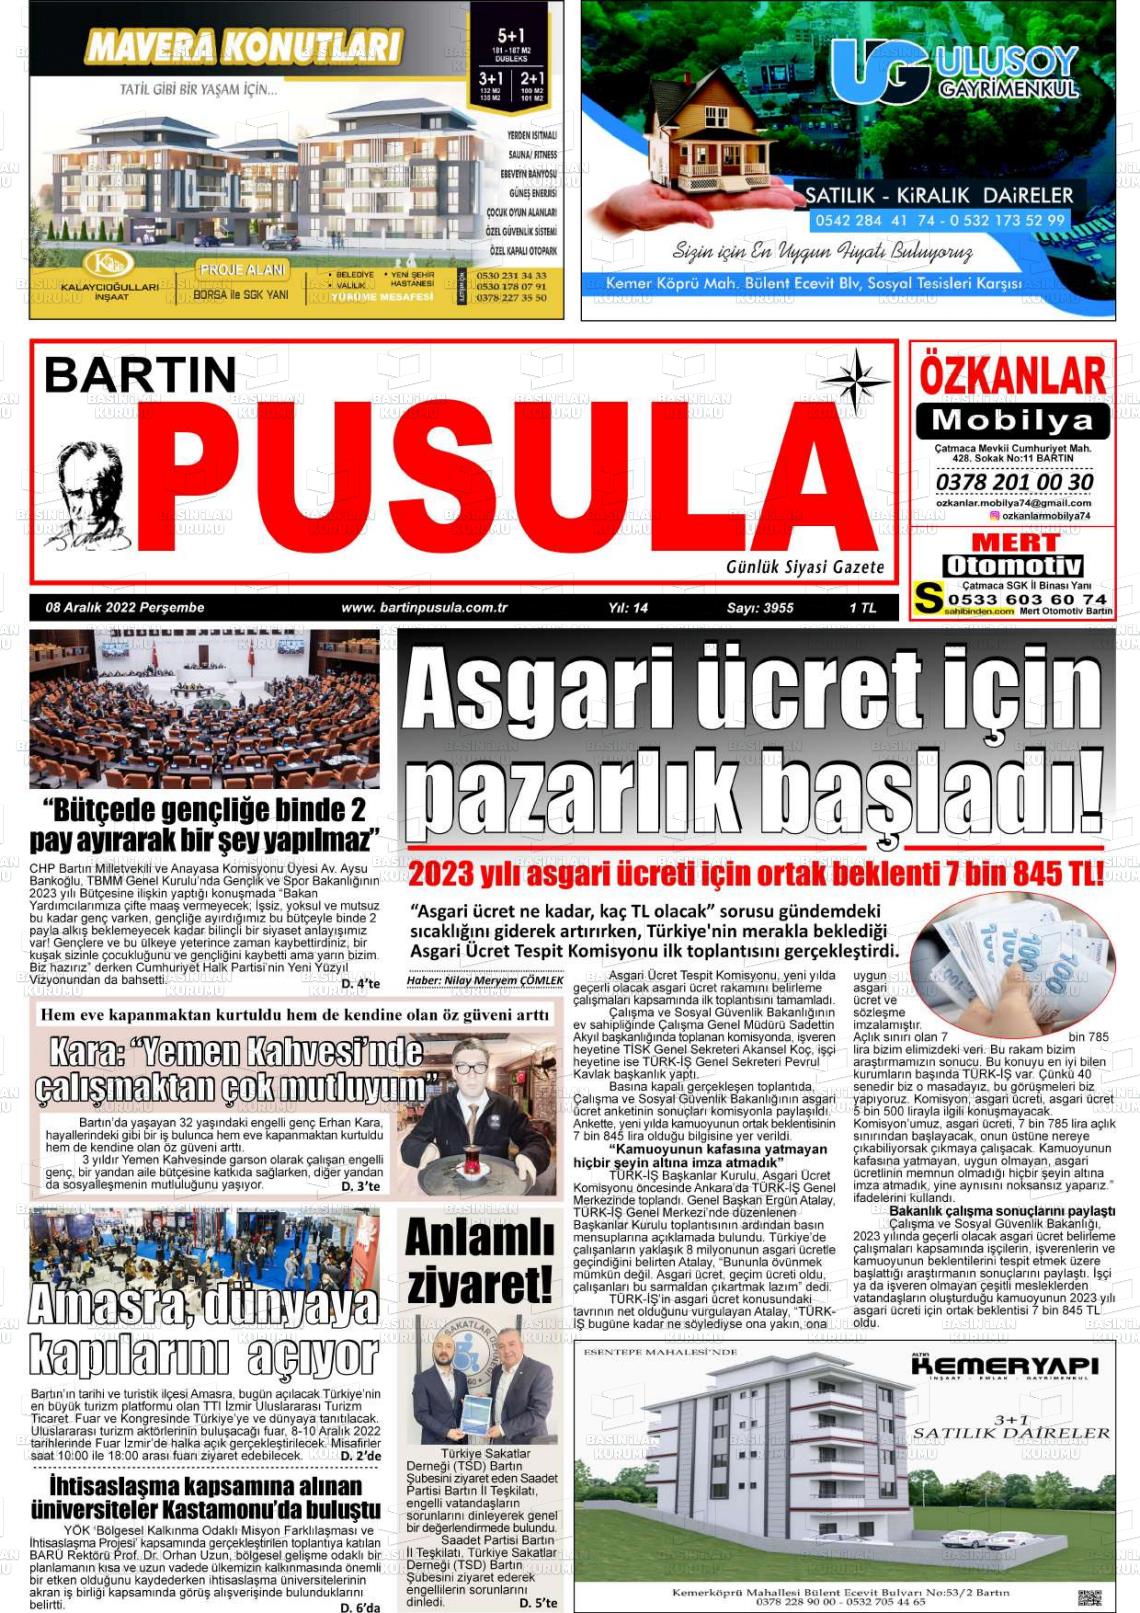 08 Aralık 2022 Bartın Pusula Gazete Manşeti